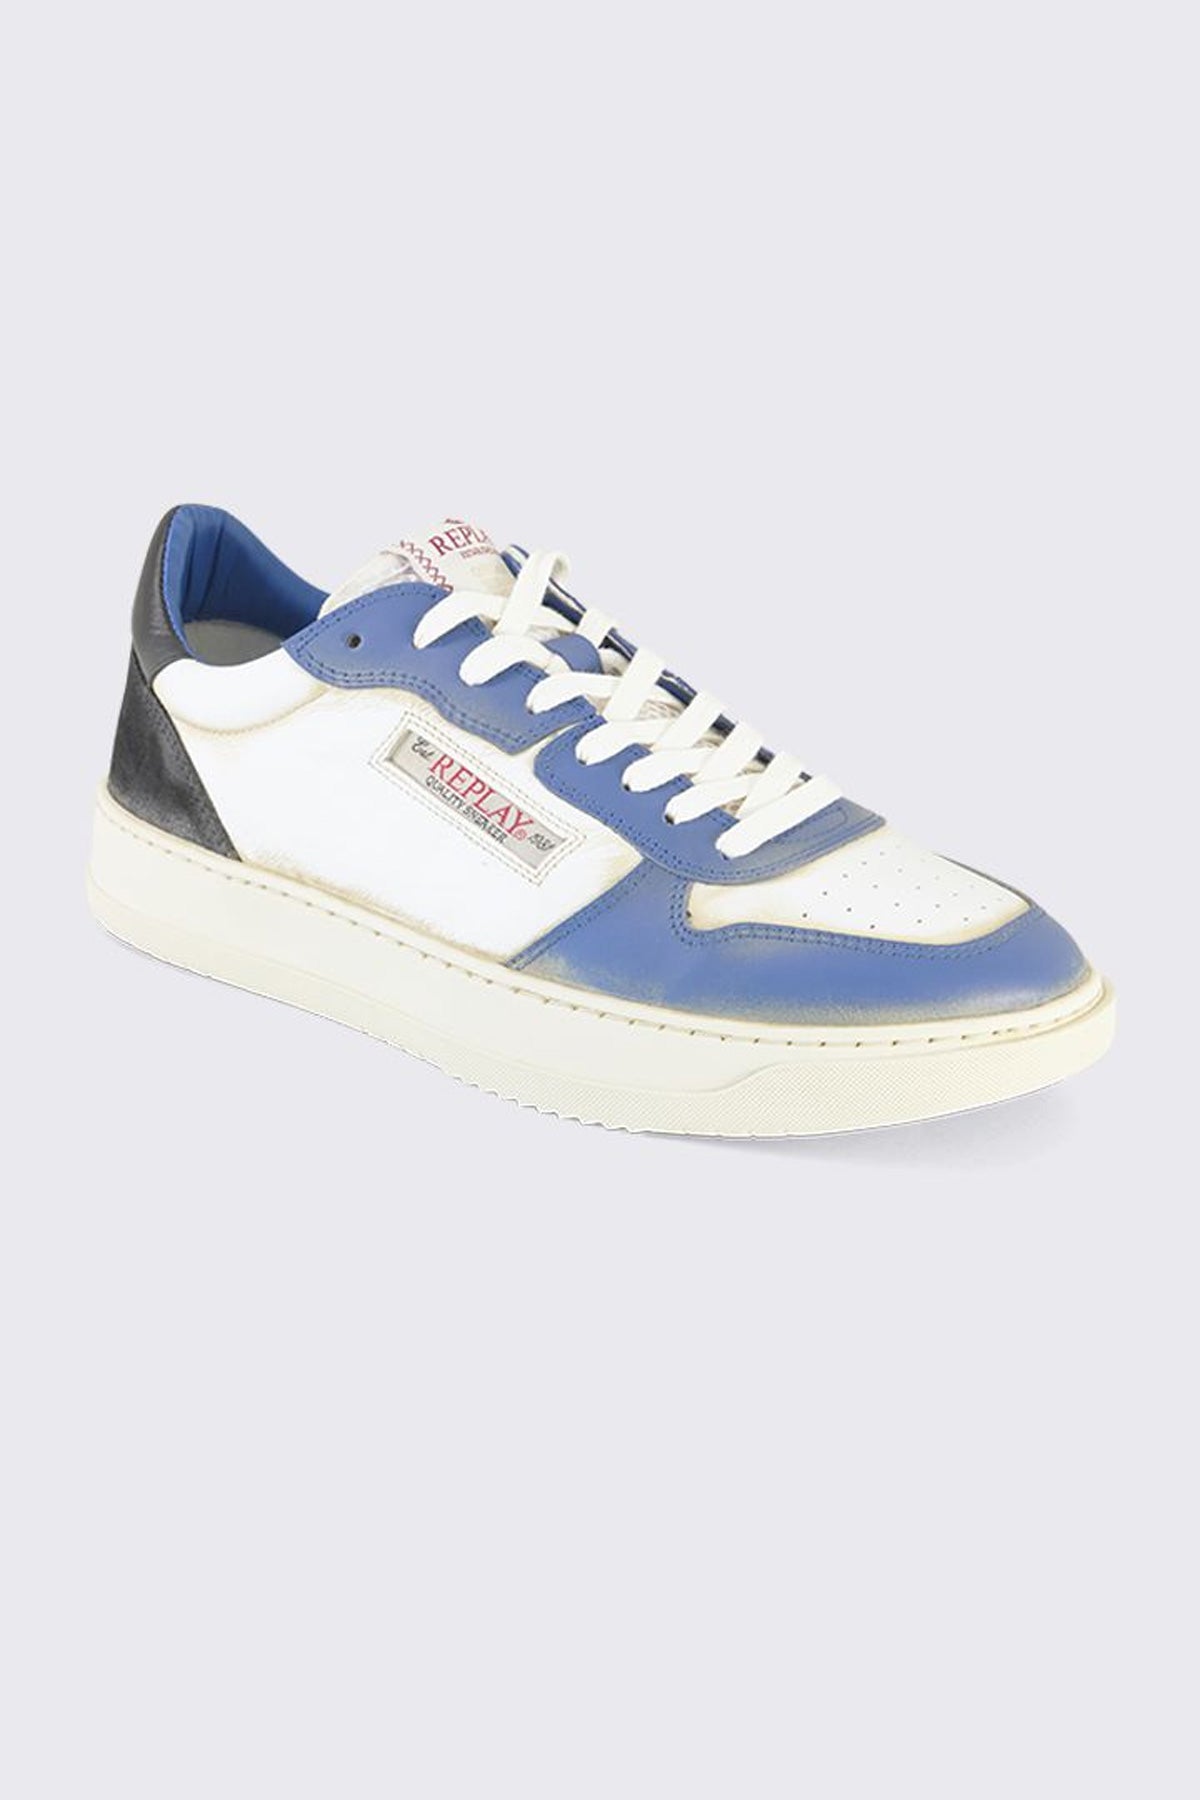 ריפליי נעלי סניקרס Reload Fluid בצבע לבן וכחול לגברים-Replay-40-נאקו